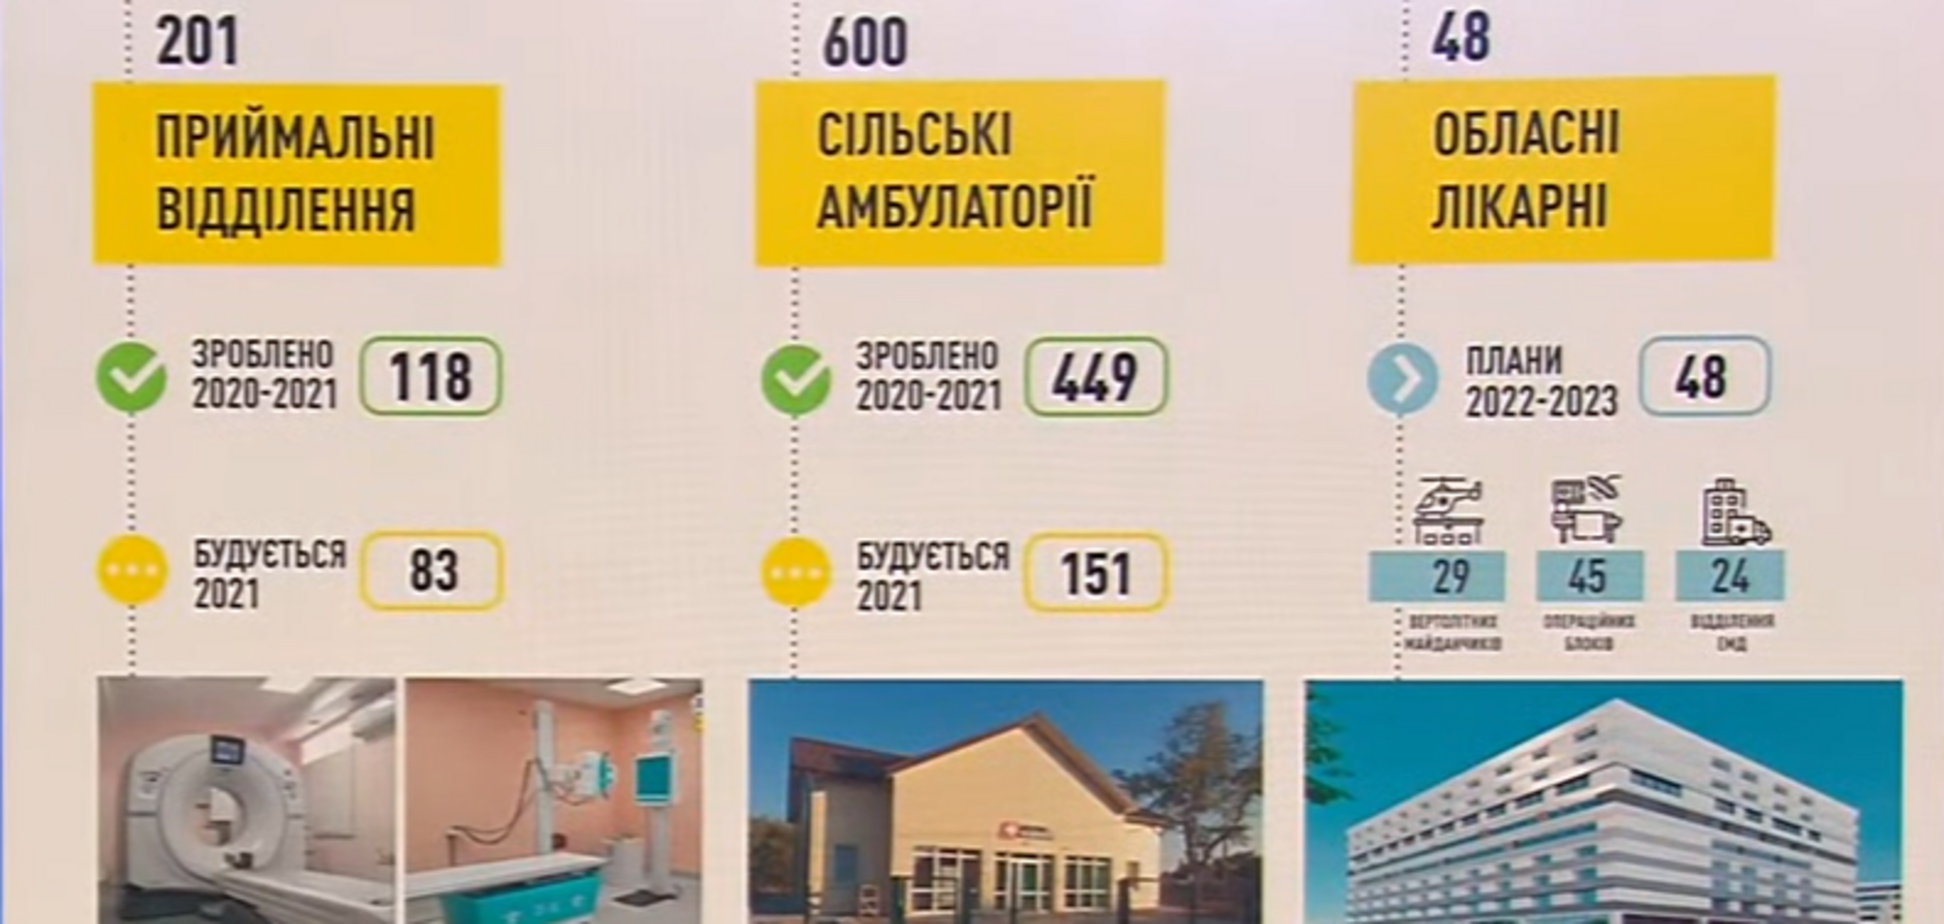 'Большая стройка' Зеленского реконструирует 48 областных больниц и построит для них 29 вертолетных площадок